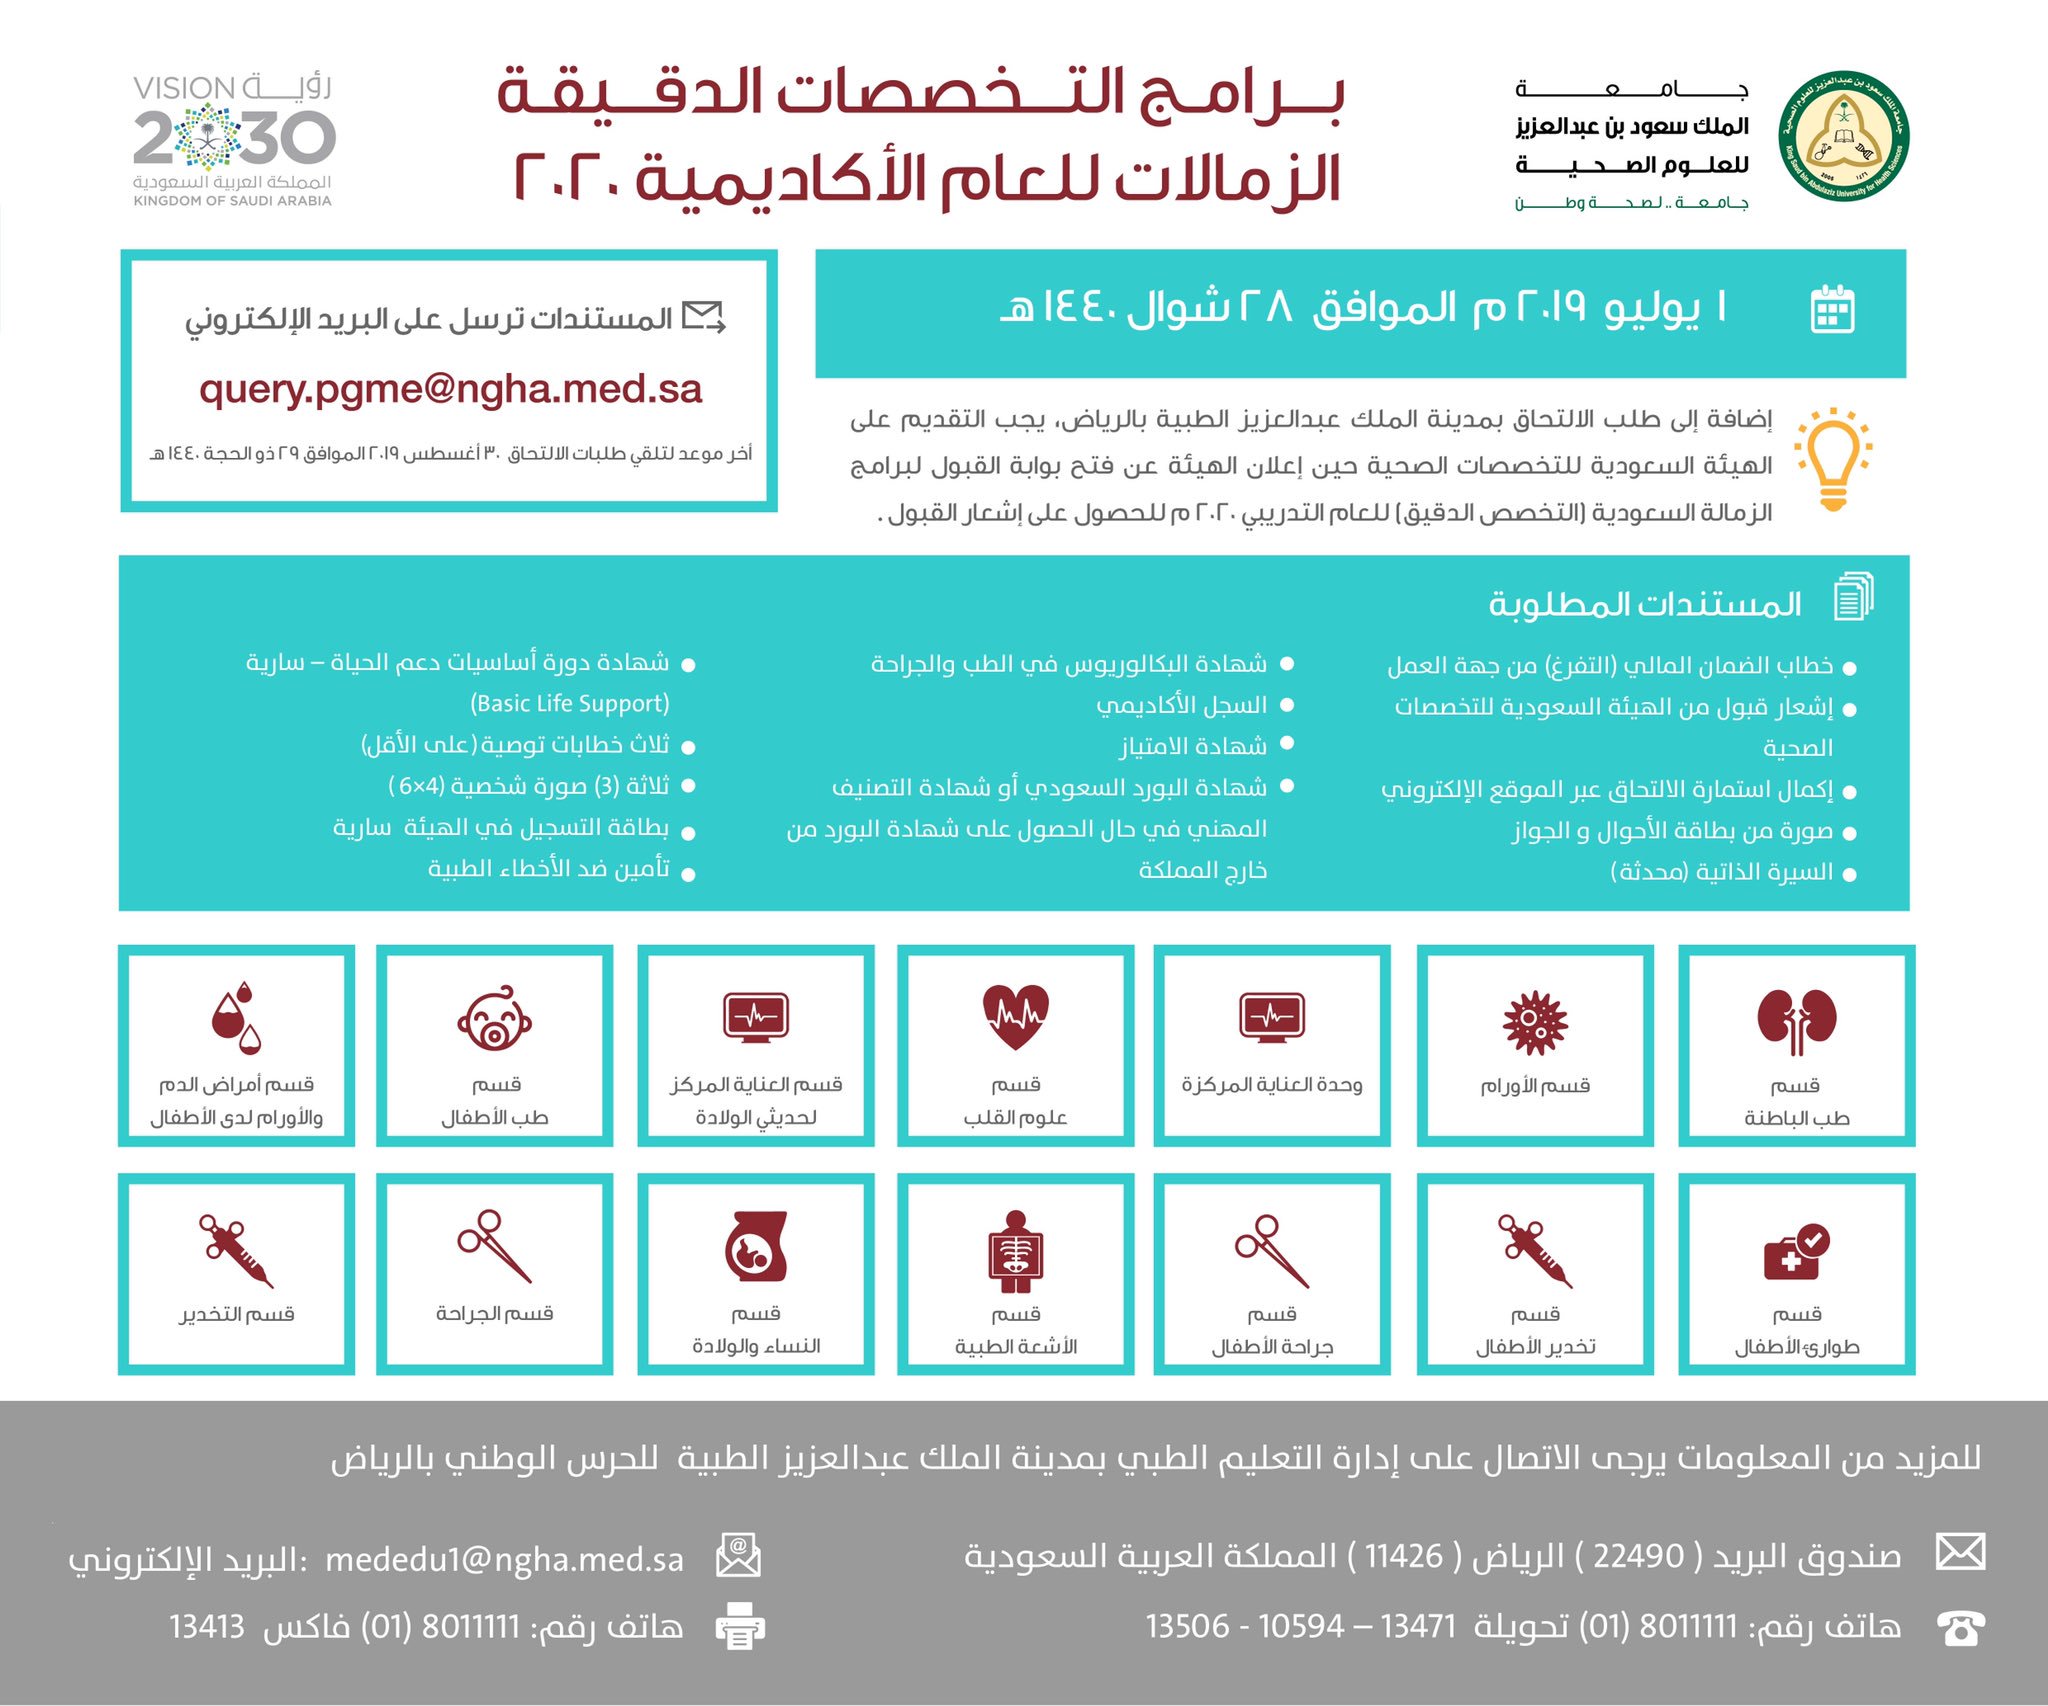 جامعة الملك سعود بن عبدالعزيز للعلوم الصحية On Twitter الجامعة